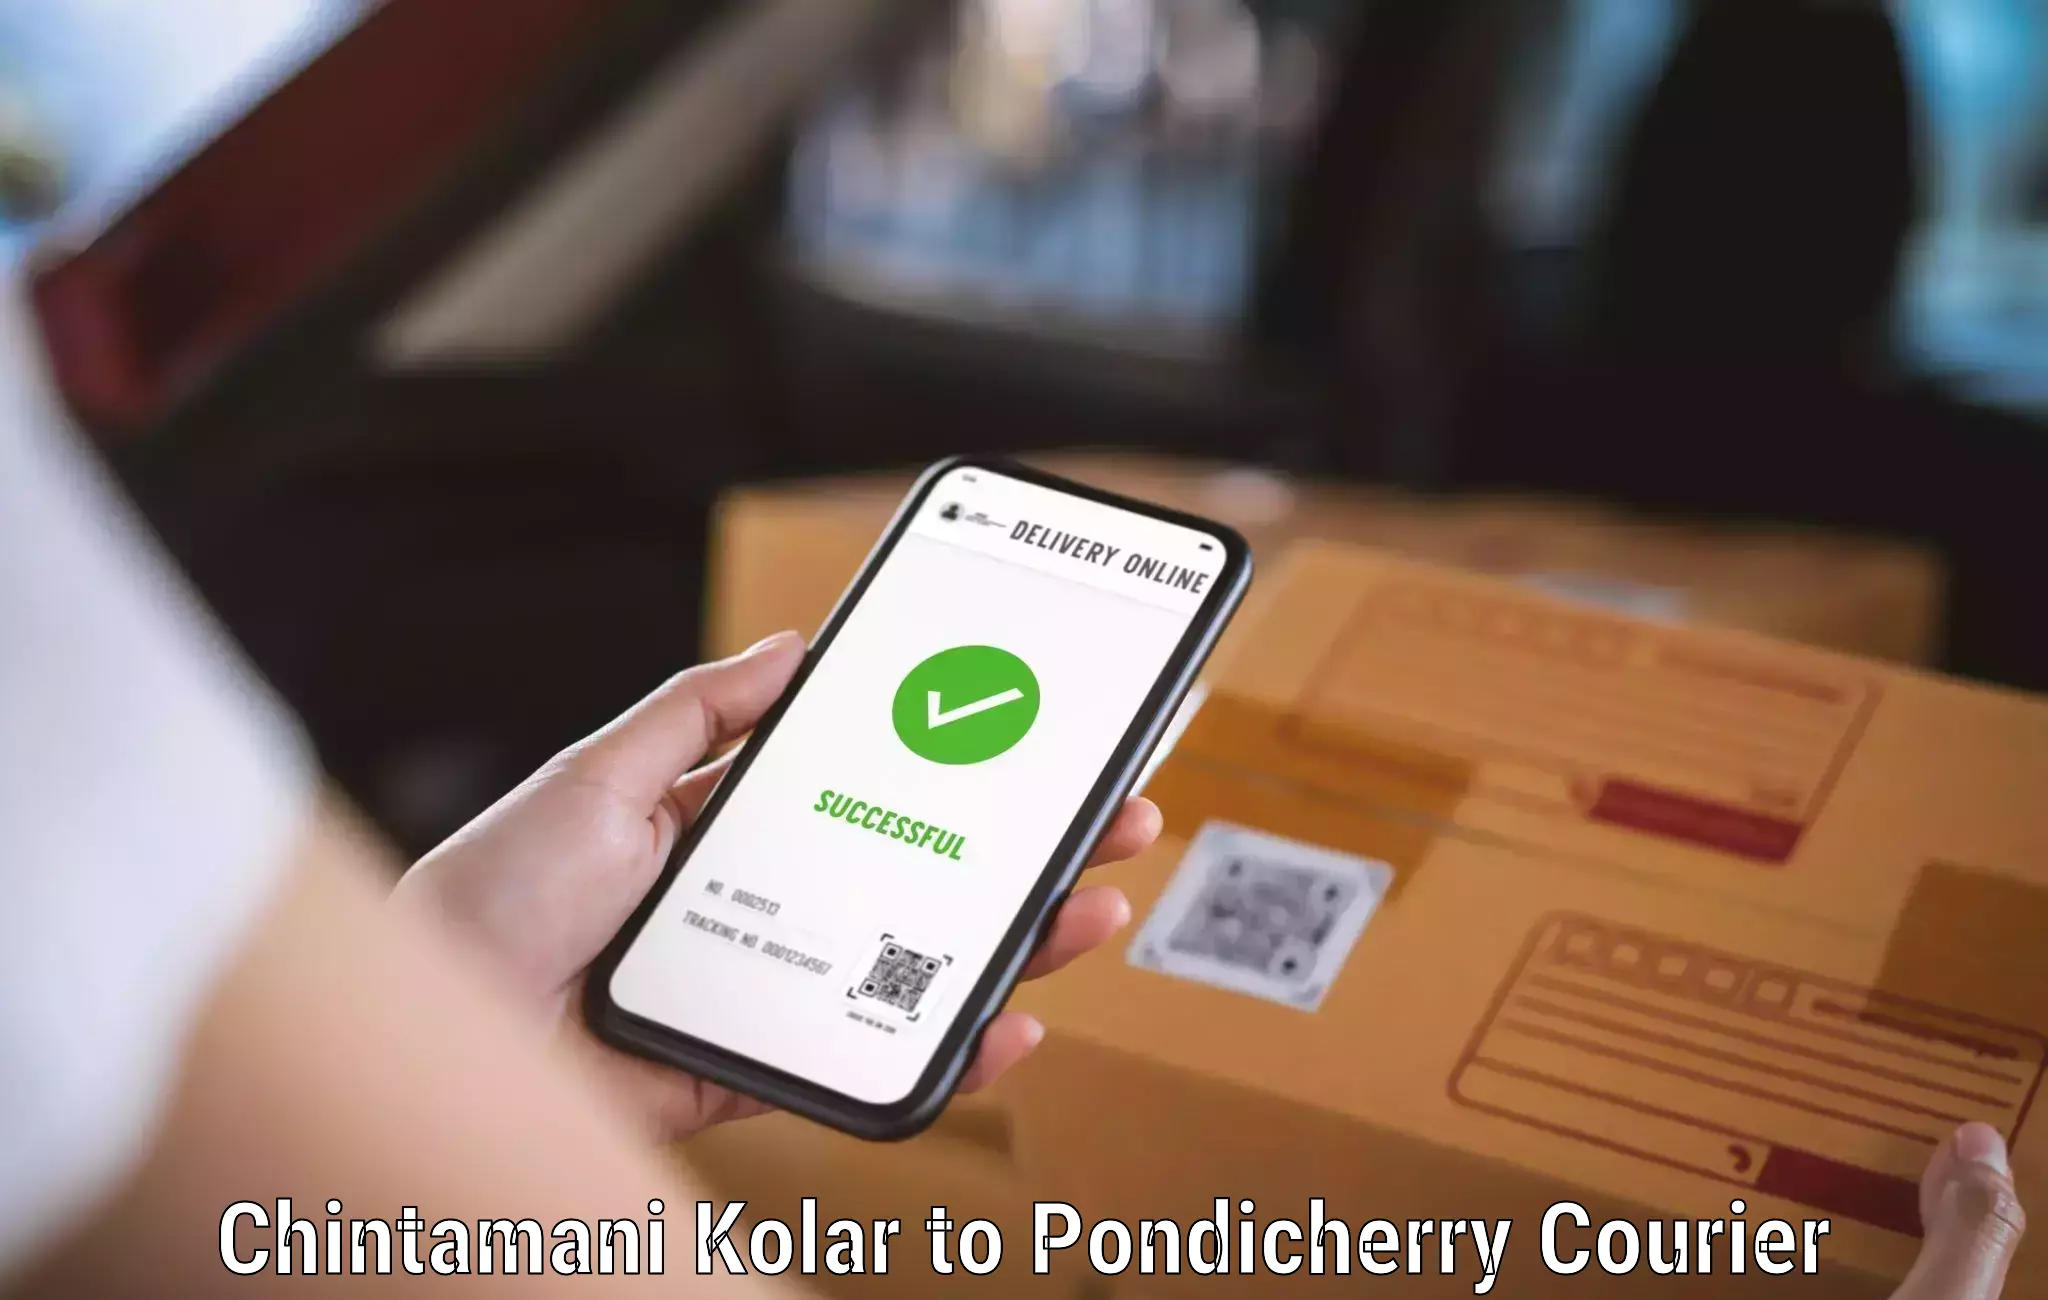 Speedy delivery service Chintamani Kolar to Pondicherry